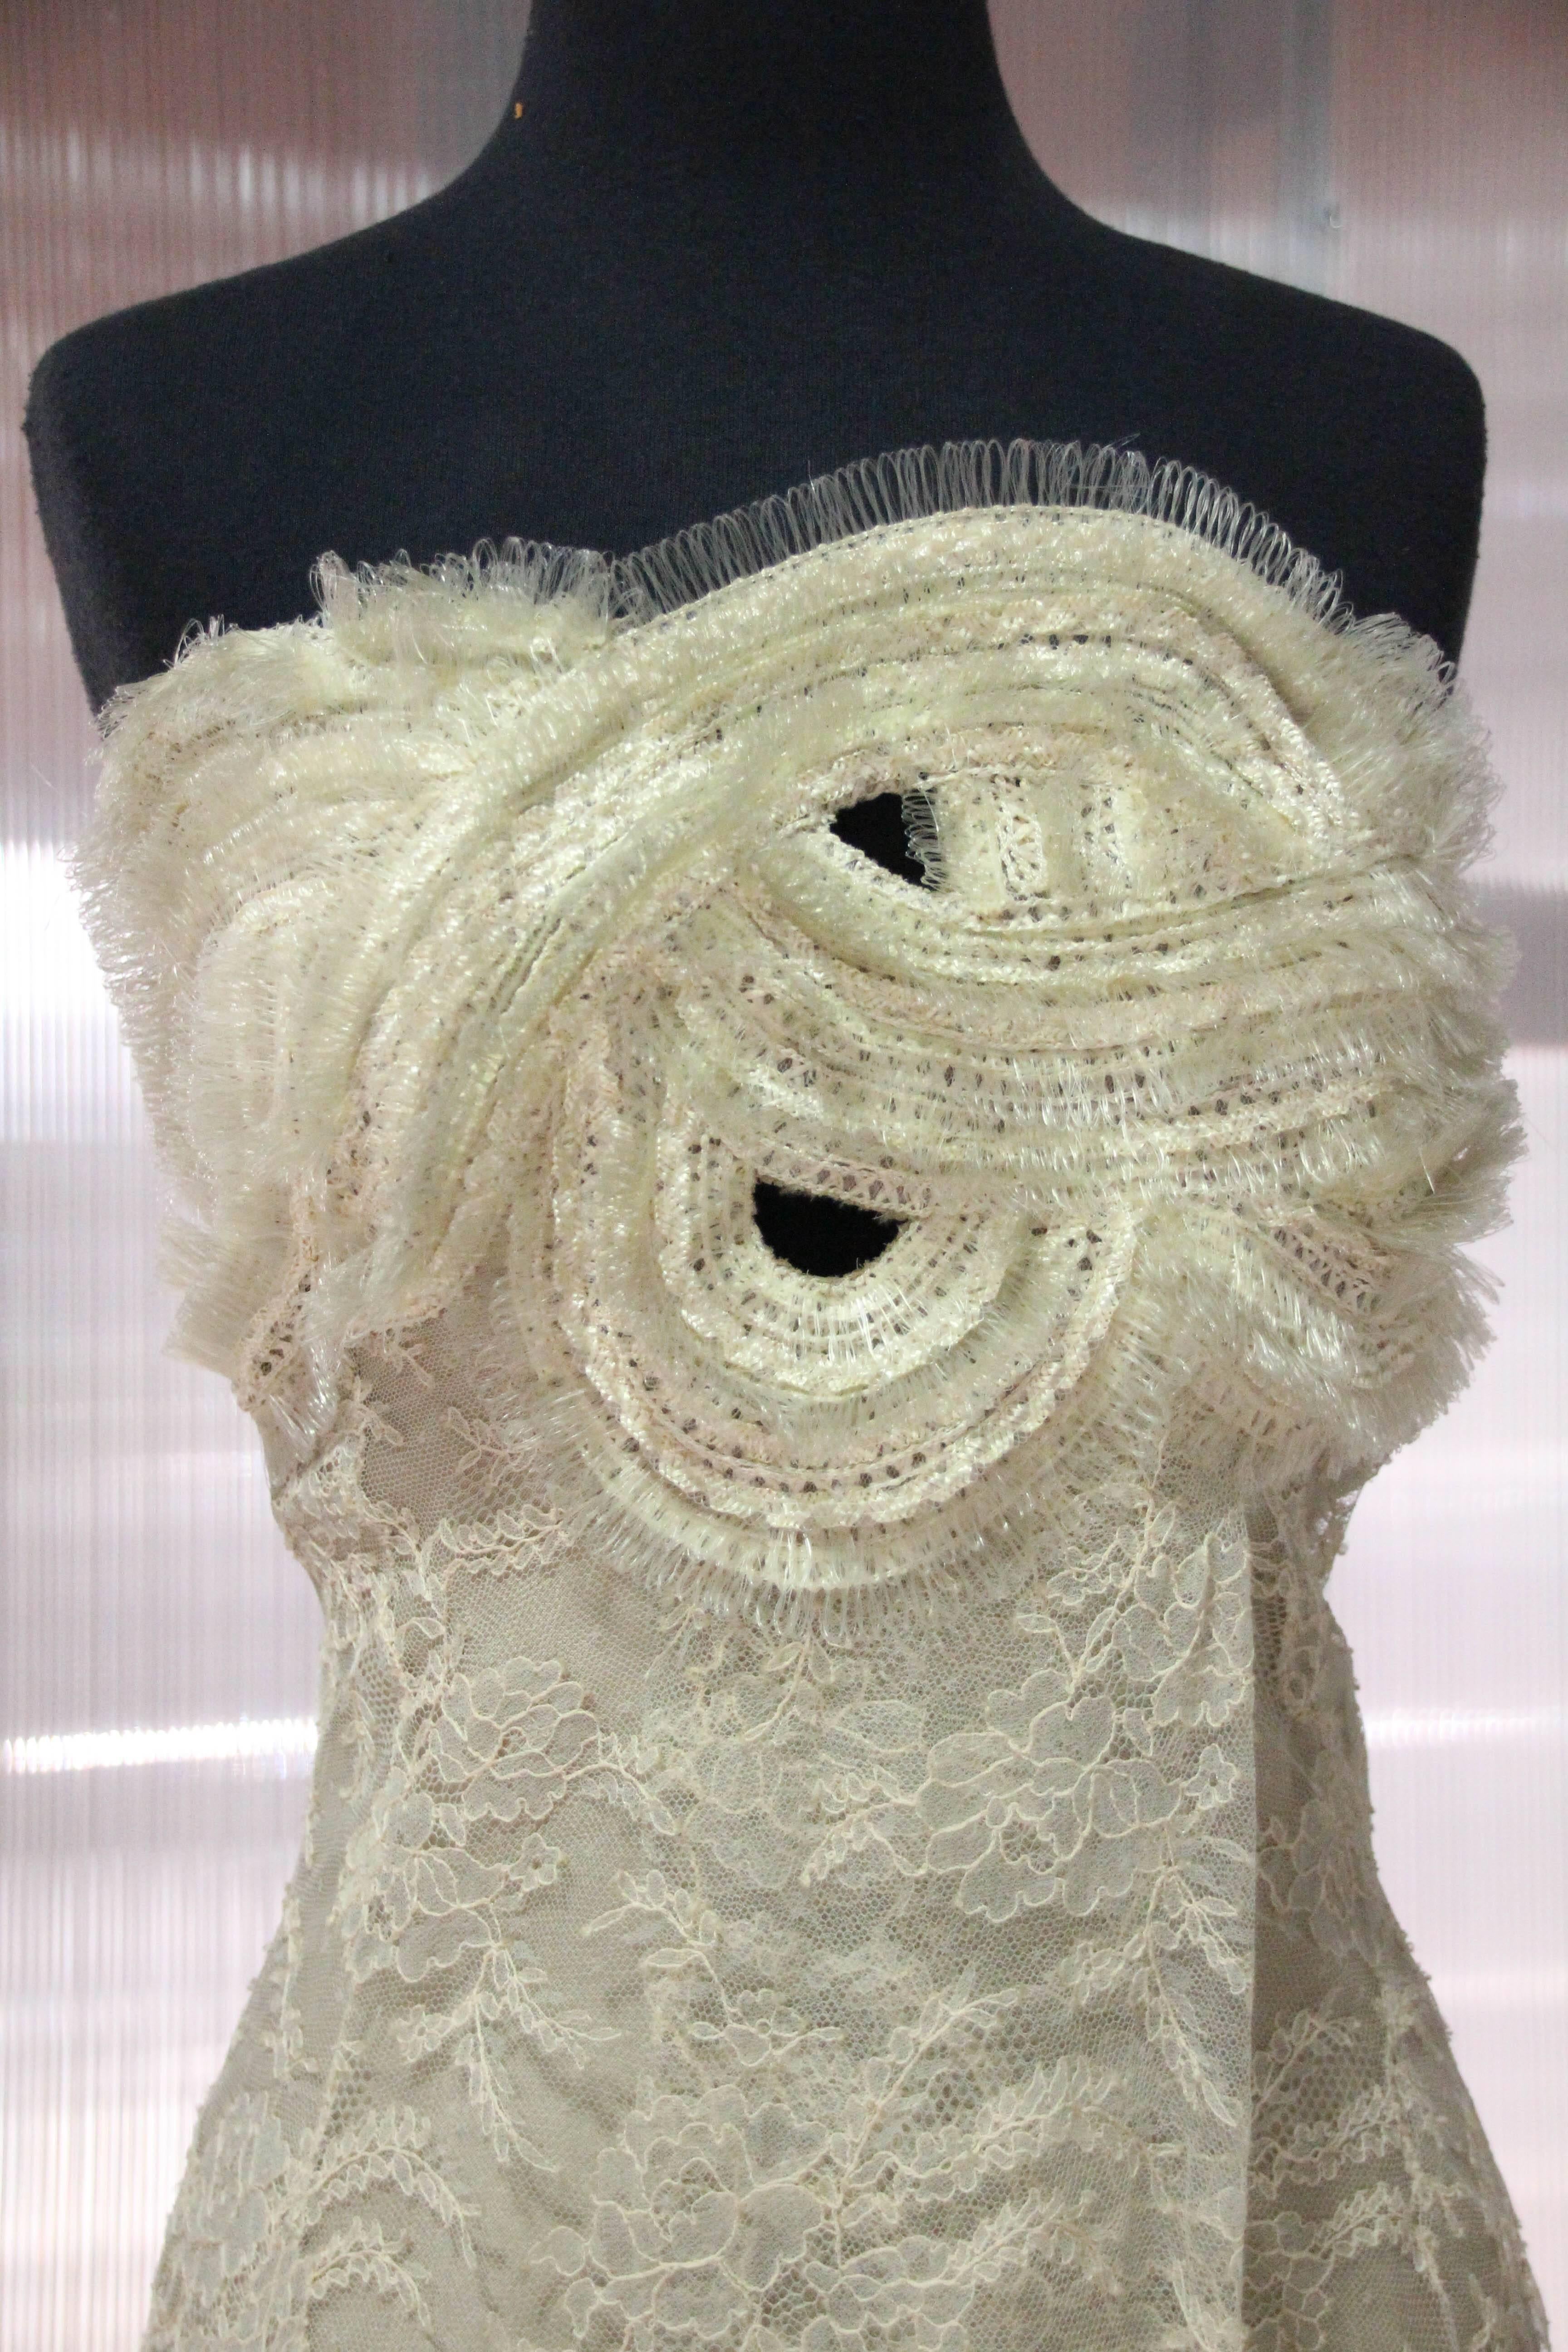 1990er Jahre Gianfranco Ferre ecrufarbenes Kleid aus französischer Spitze und Rosshaarflecht, strukturiert, trägerlos, mit schlangenförmig geflochtenem Mieder, das einen Blick freigibt.  Vorderseite mit Overlay-Spitze und hohem Schlitz. Vollständig